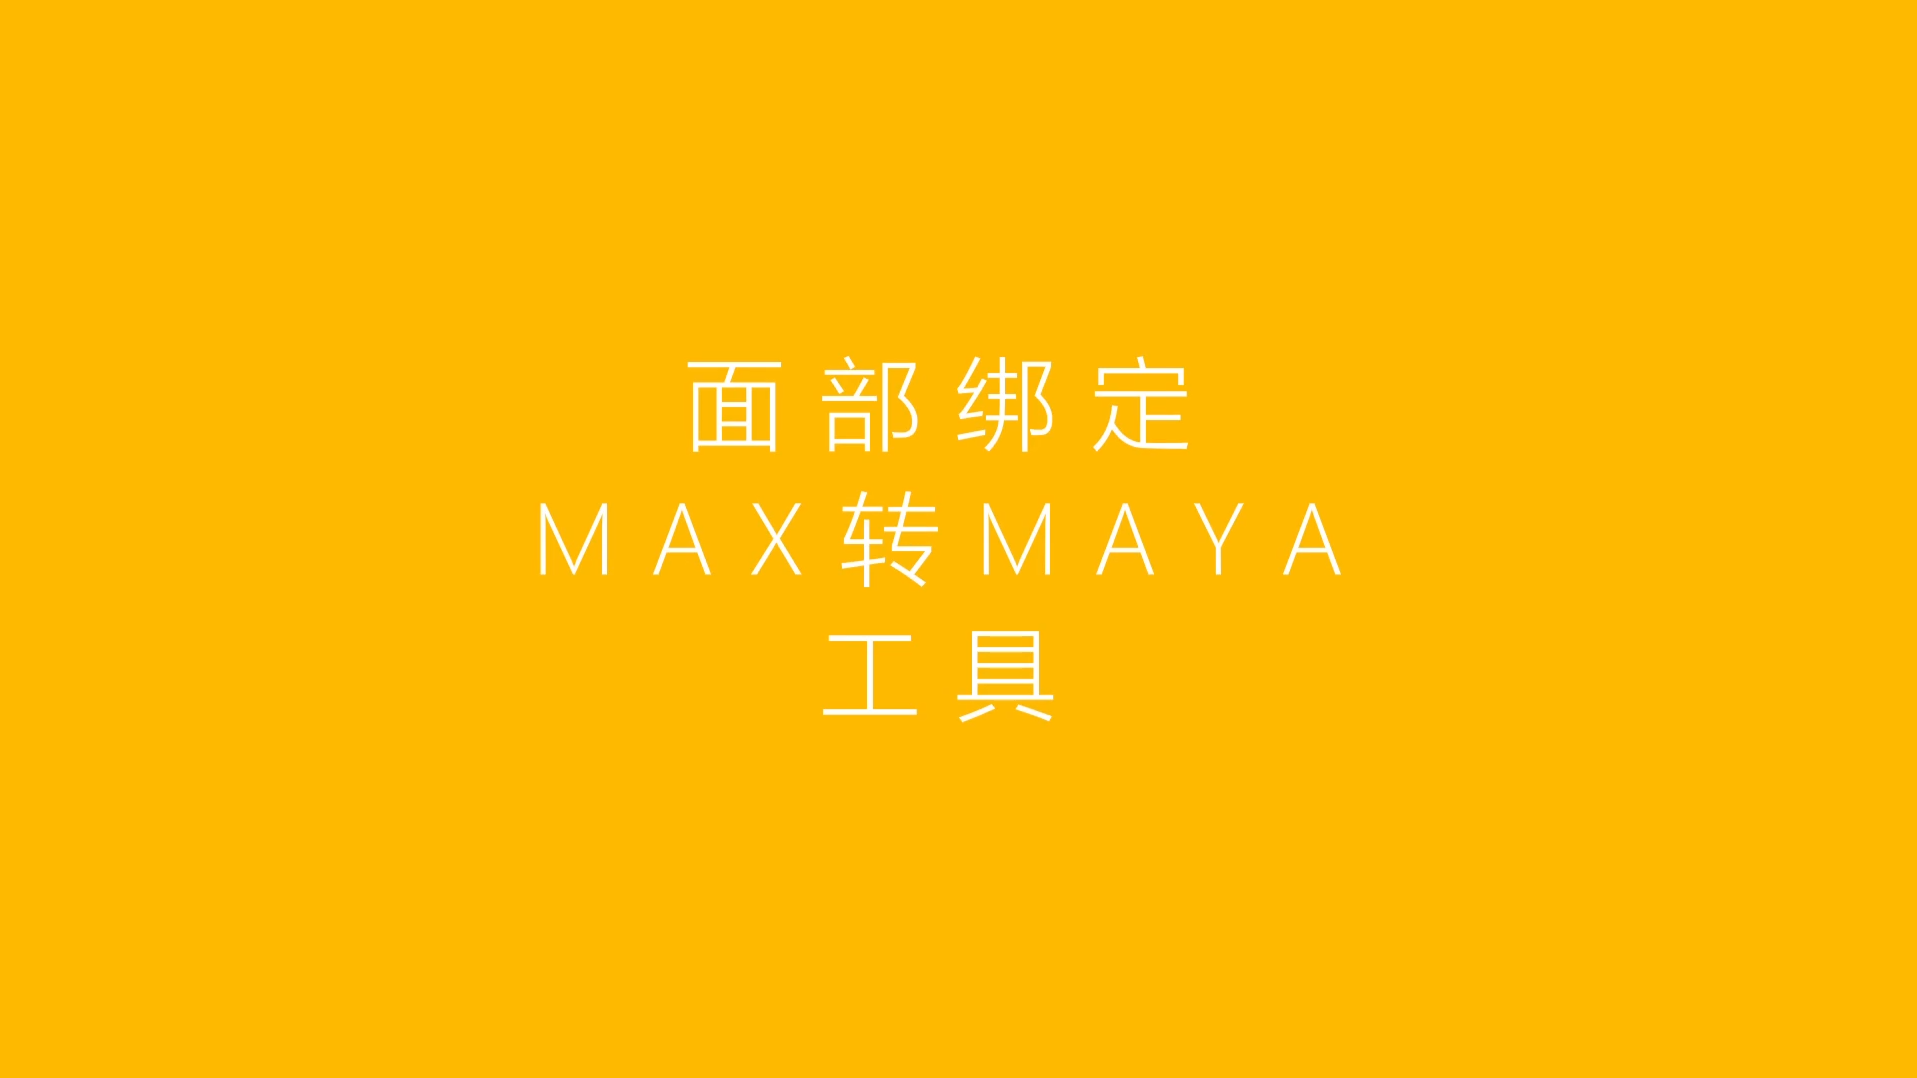 max2maya.png